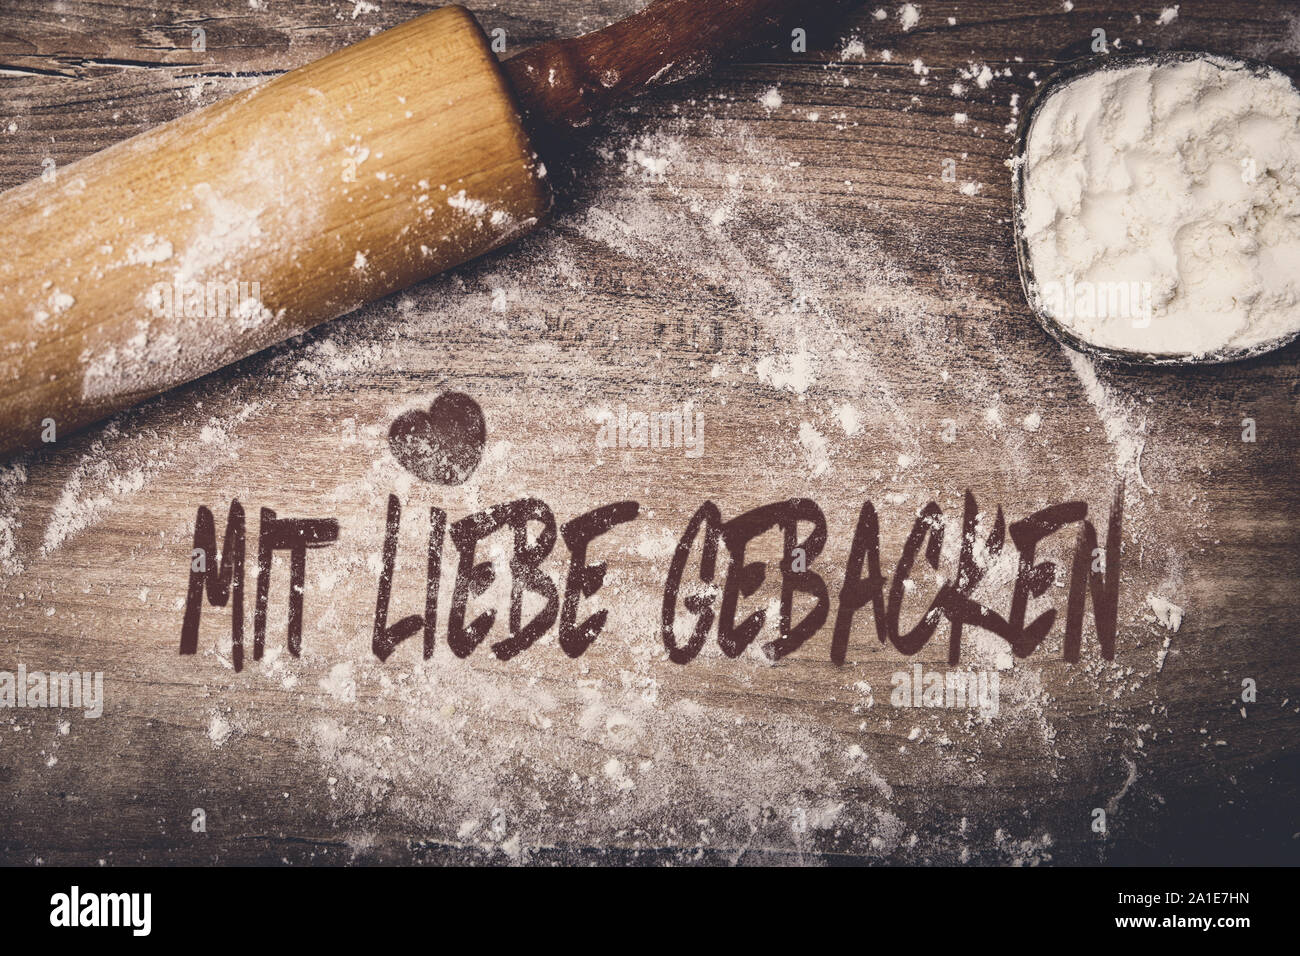 Rouleau de pâte et de farine sur la table en bois, texte allemand mit liebe gebacken ce qui signifie cuit avec amour Banque D'Images